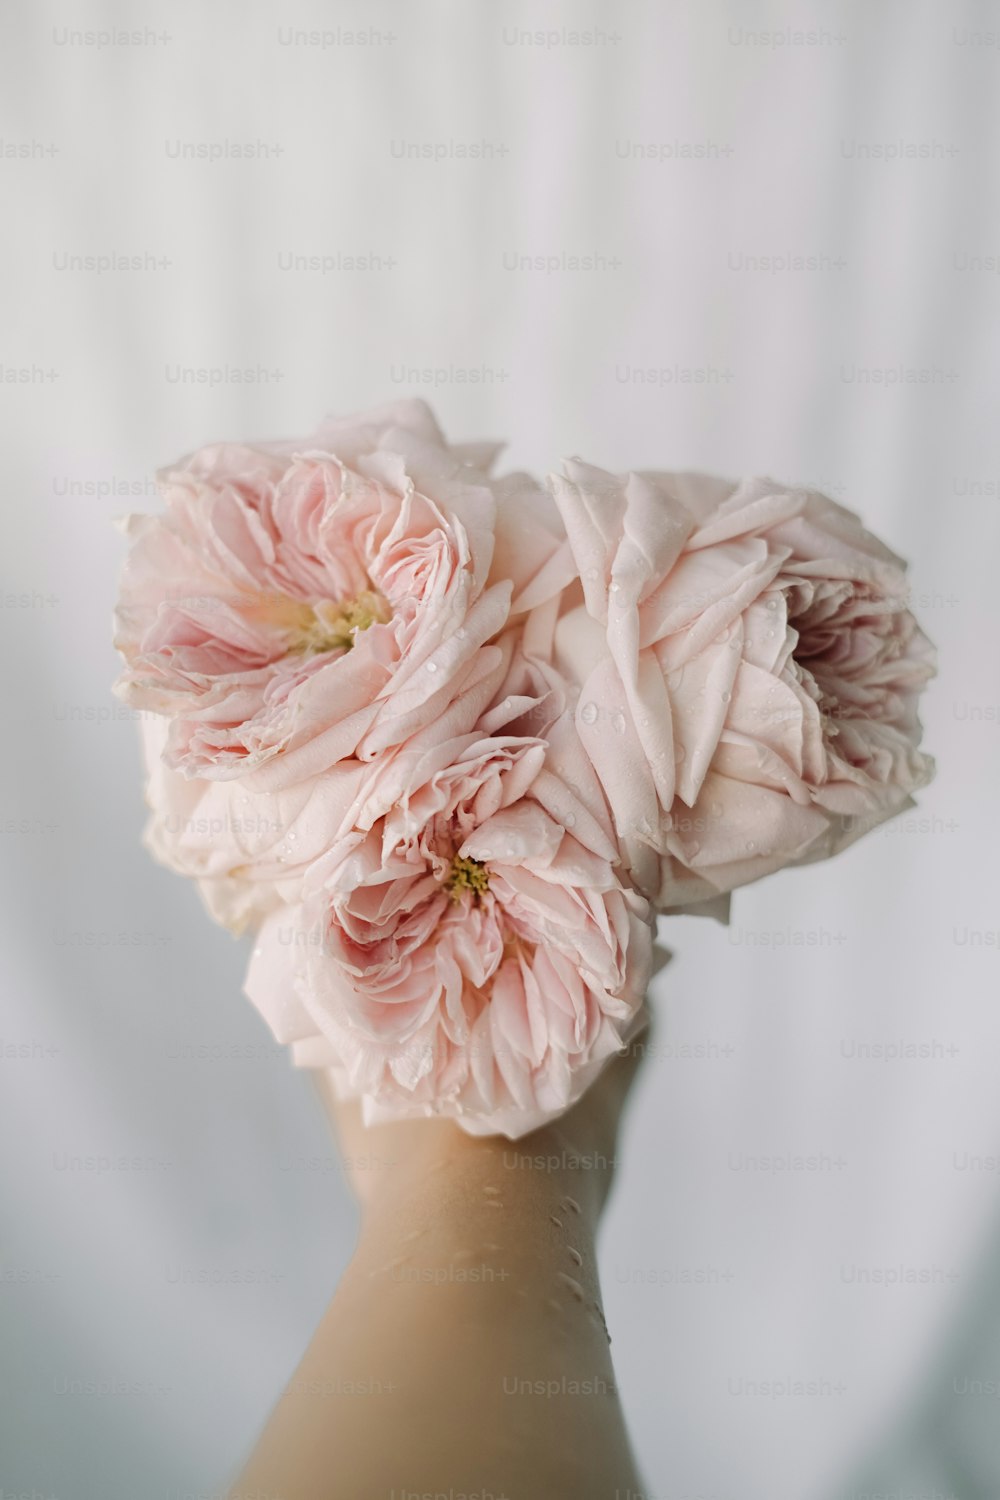 una mano sosteniendo un ramo de flores rosadas